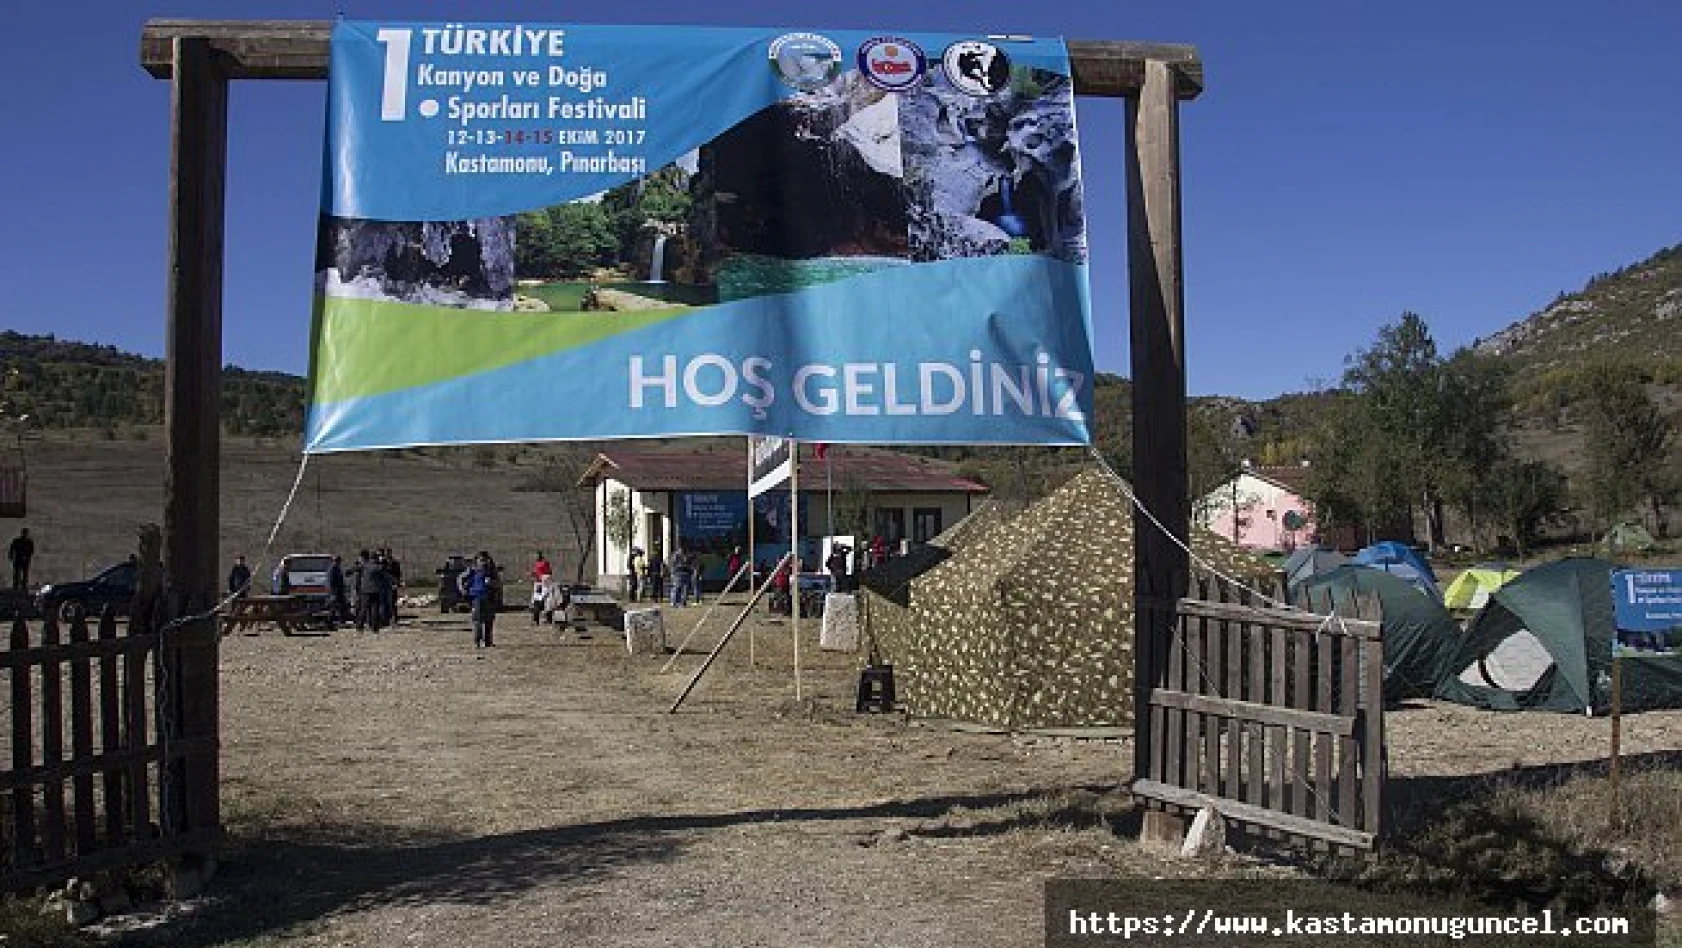 Kastamonu'da 1. Türkiye Kanyon ve Doğa Sporları Festivali başladı